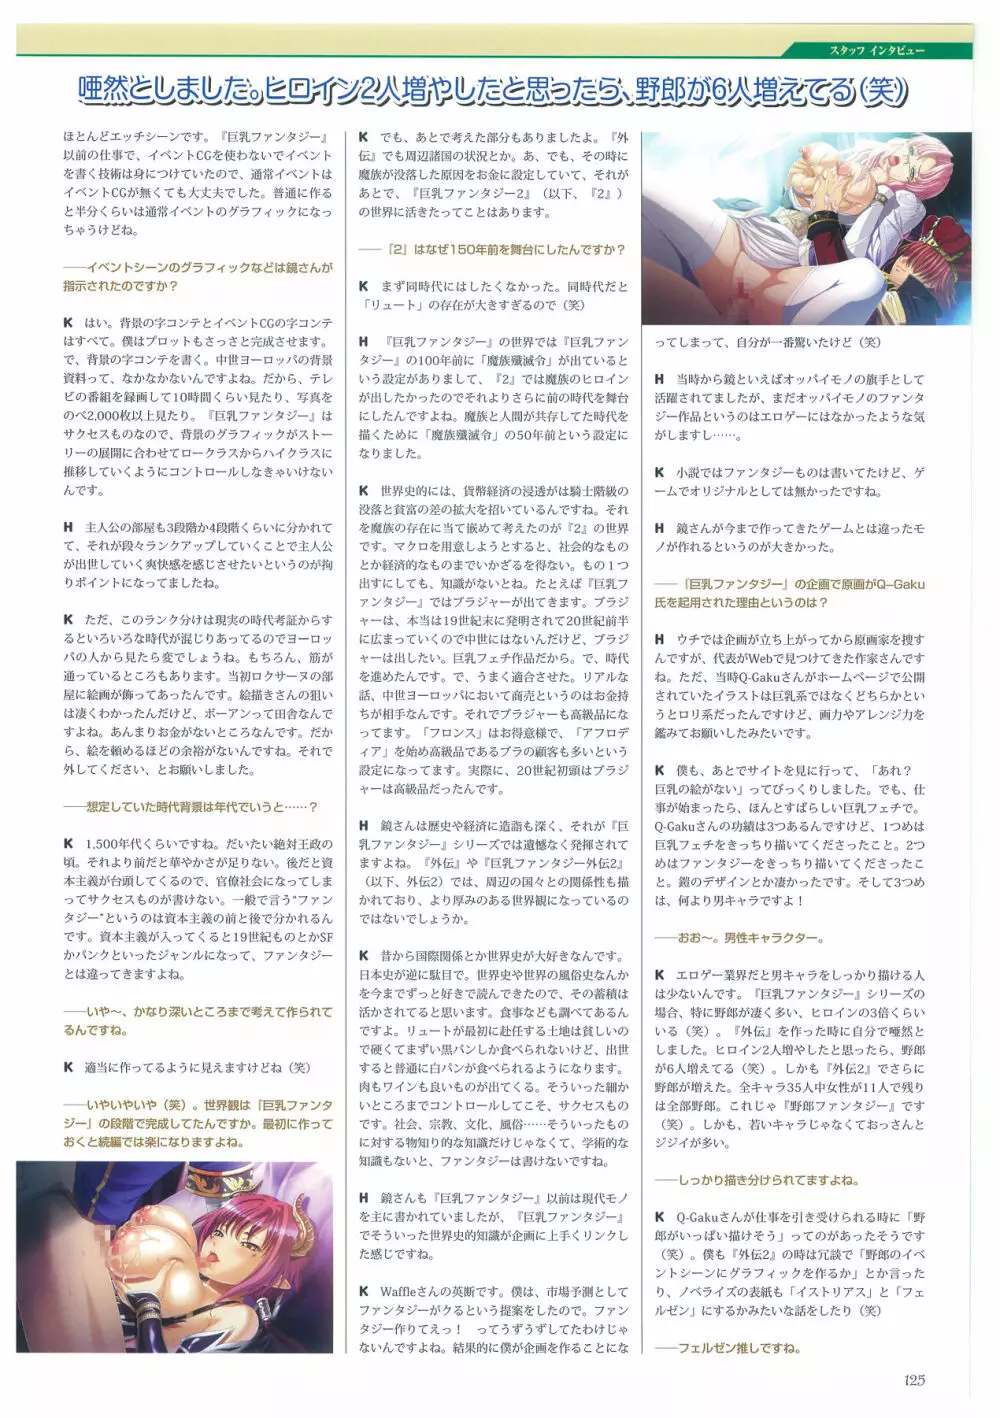 巨乳幻想 -巨乳ファンタジー コンプリート- 125ページ